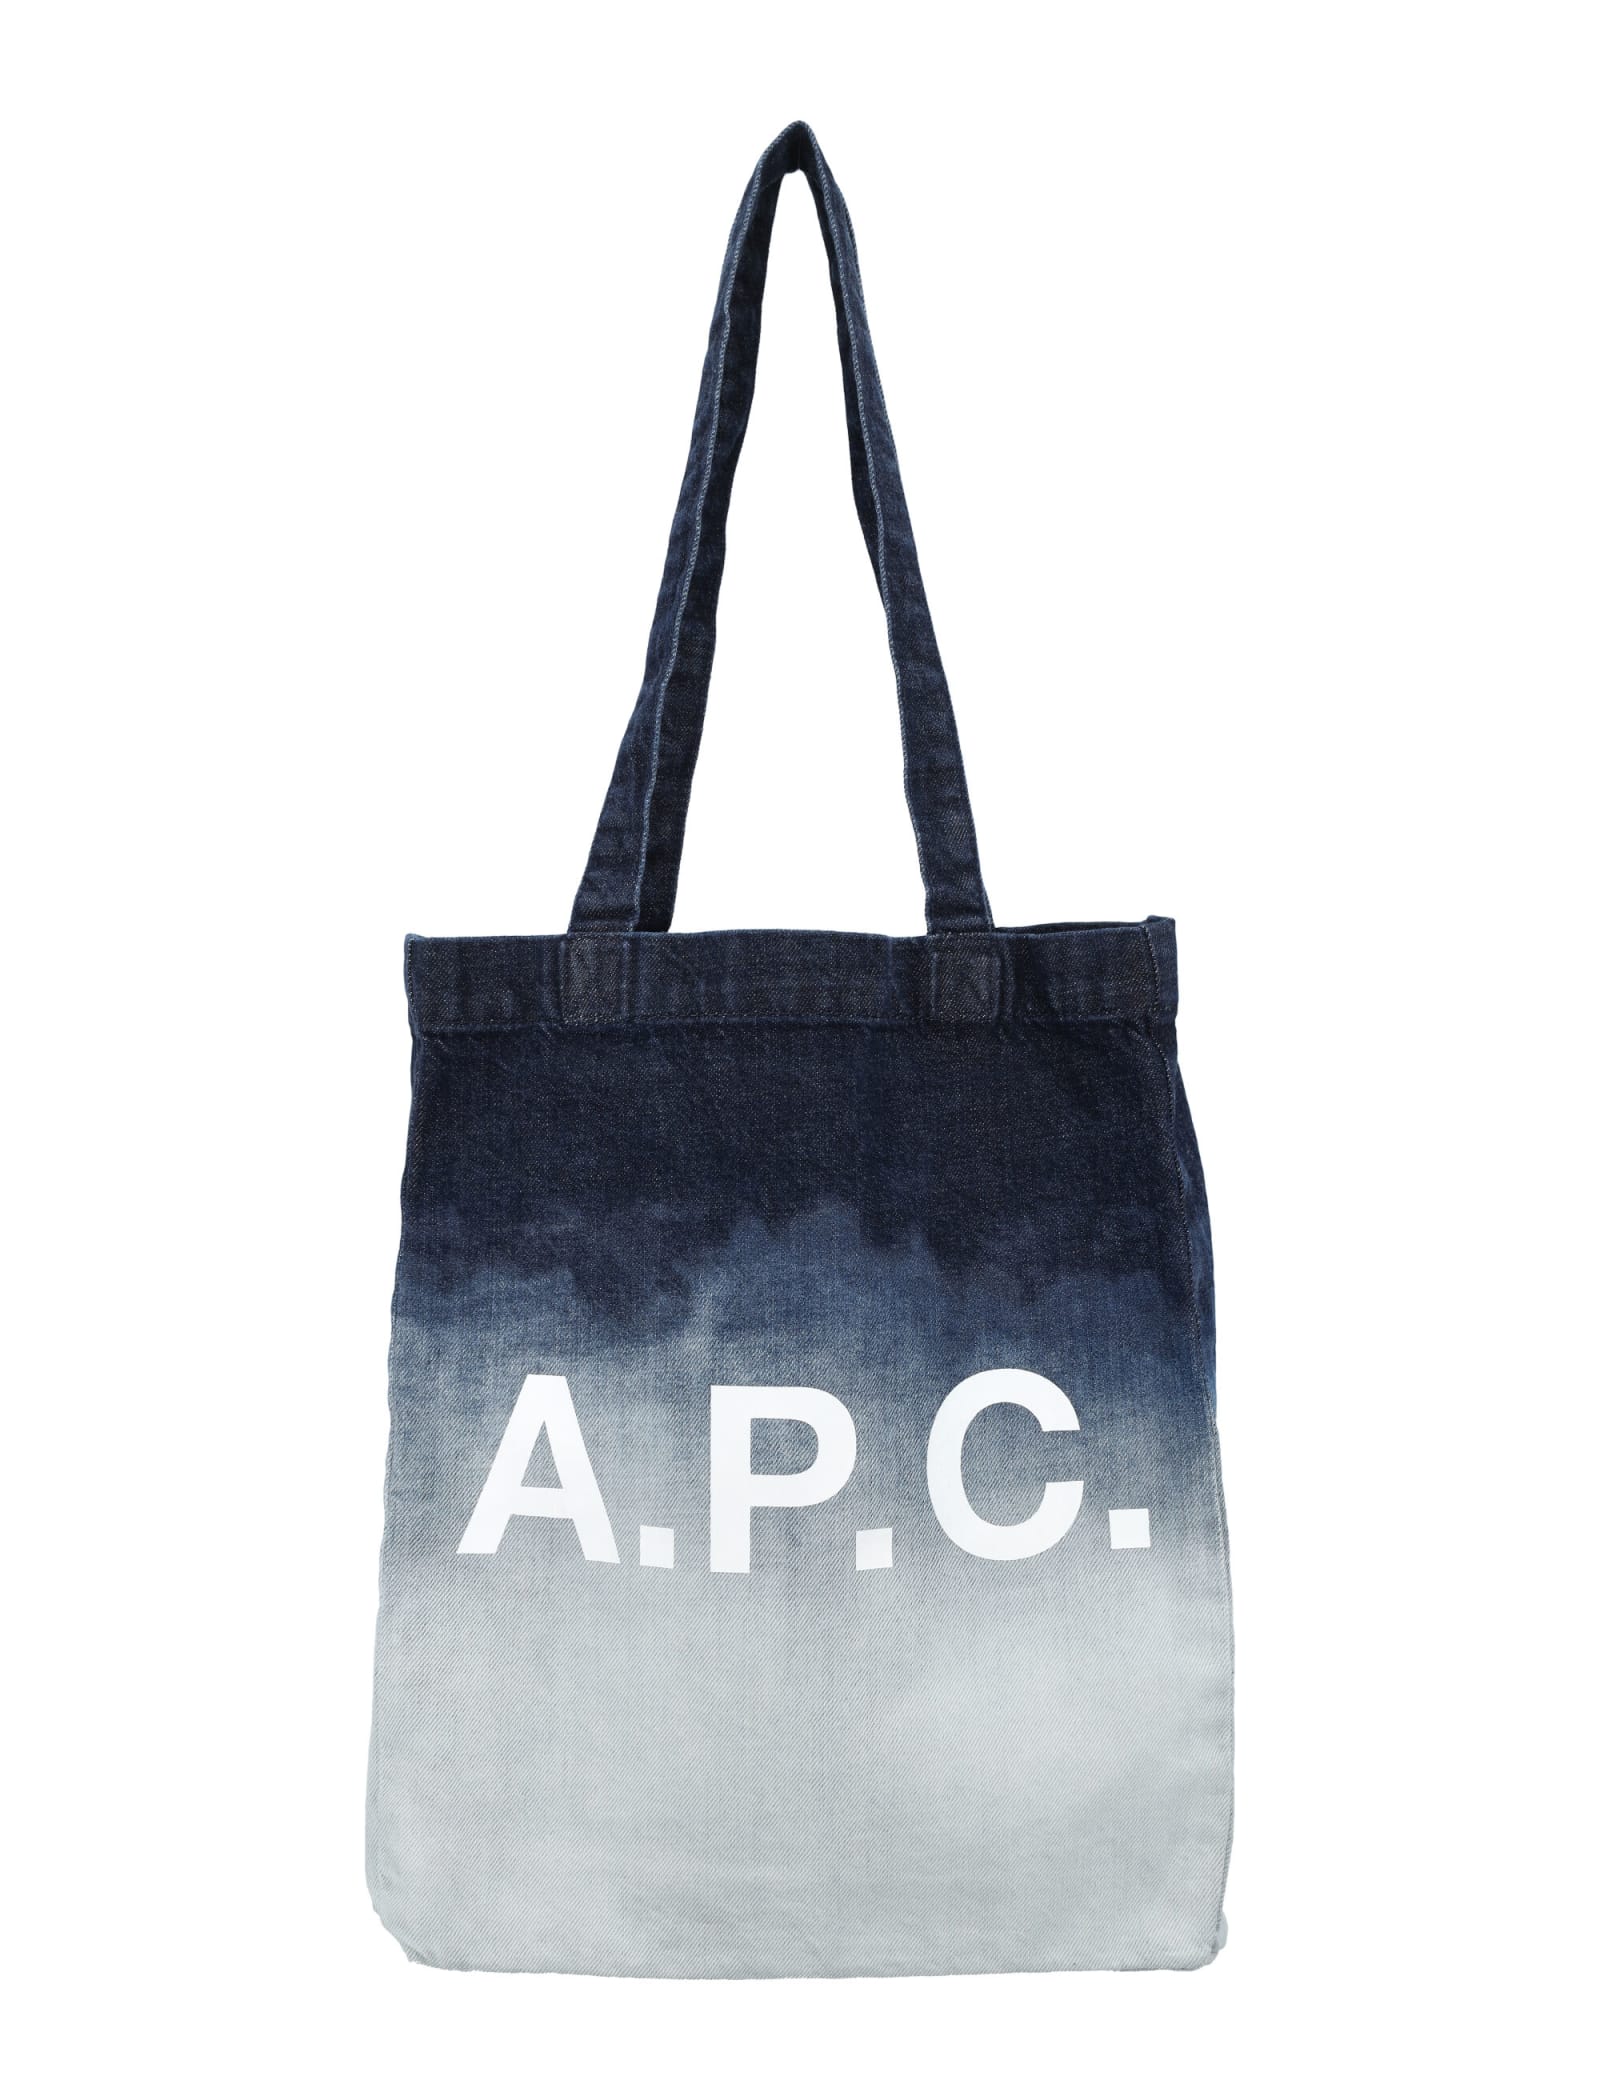 A.P.C. Lou Tote Bag